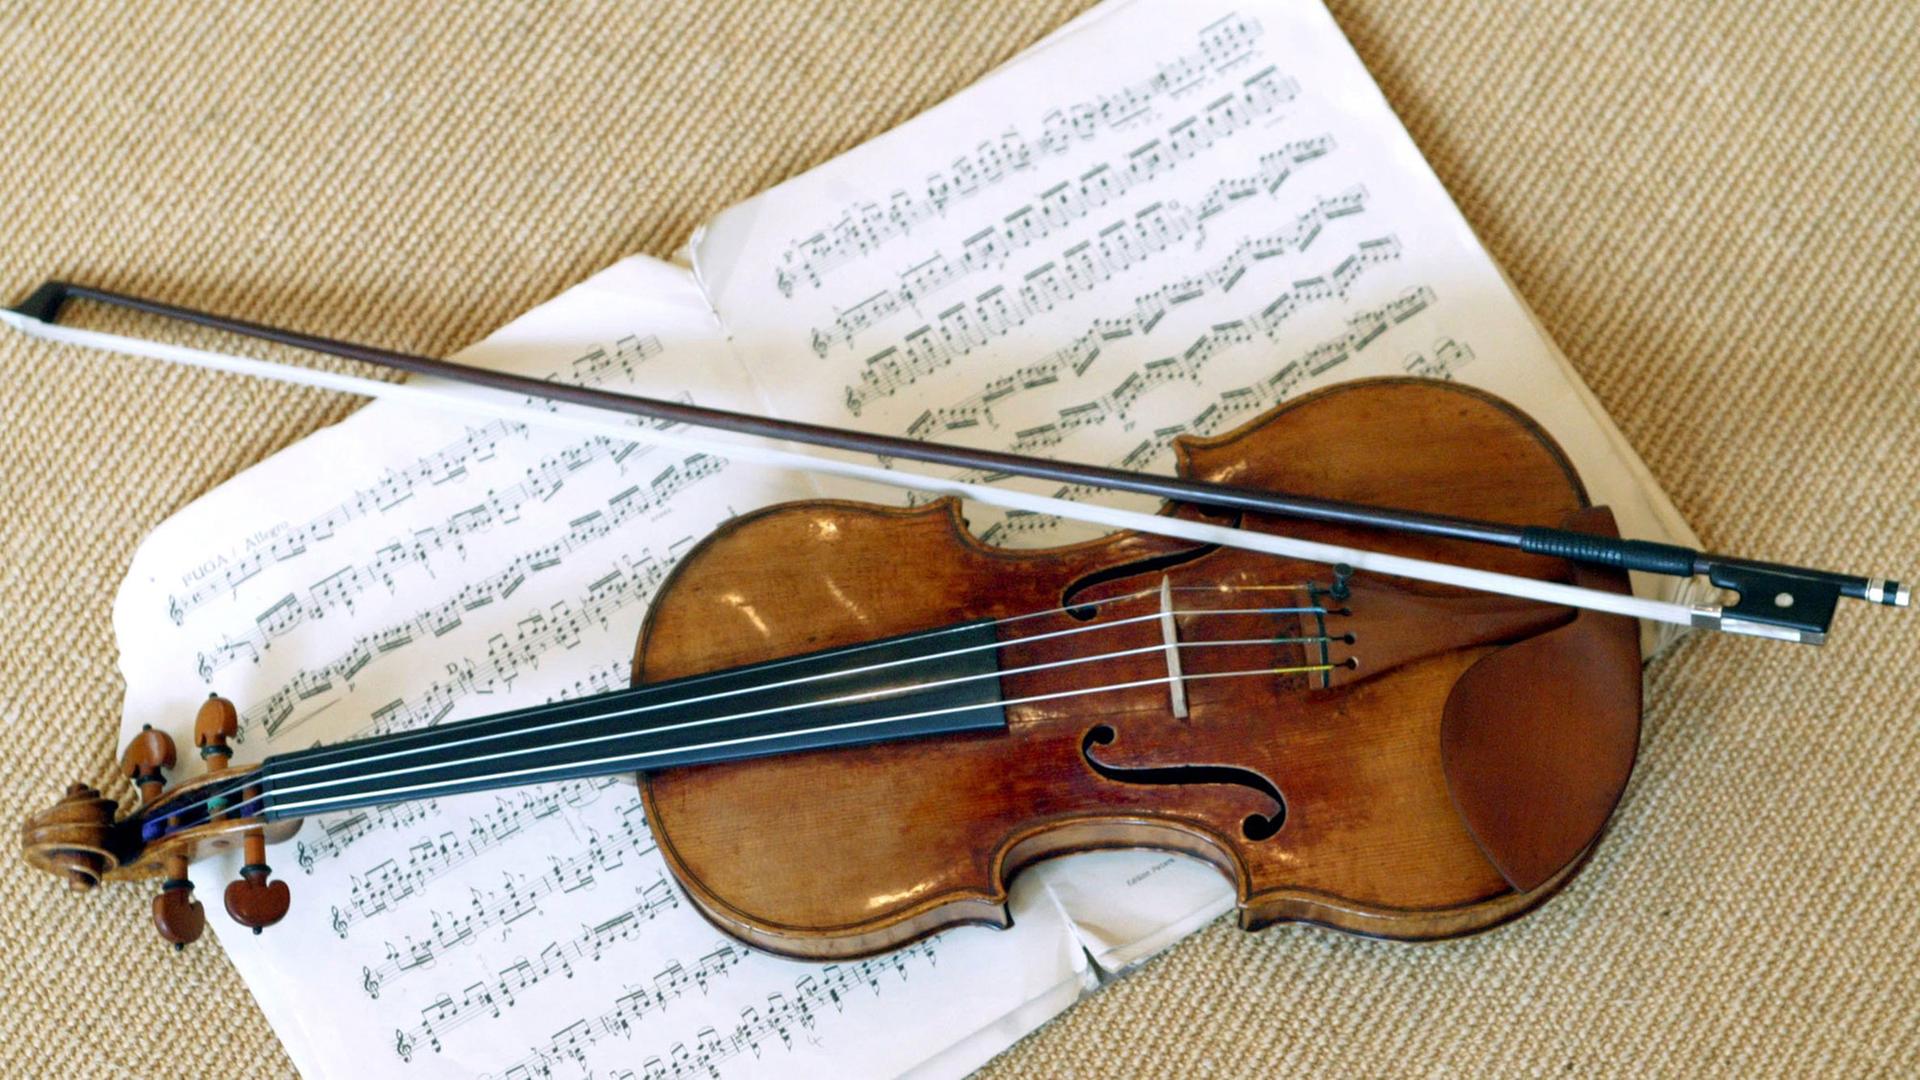 Eine Stradivari liegt mit einem Geigenbogen auf einem Notenblatt.